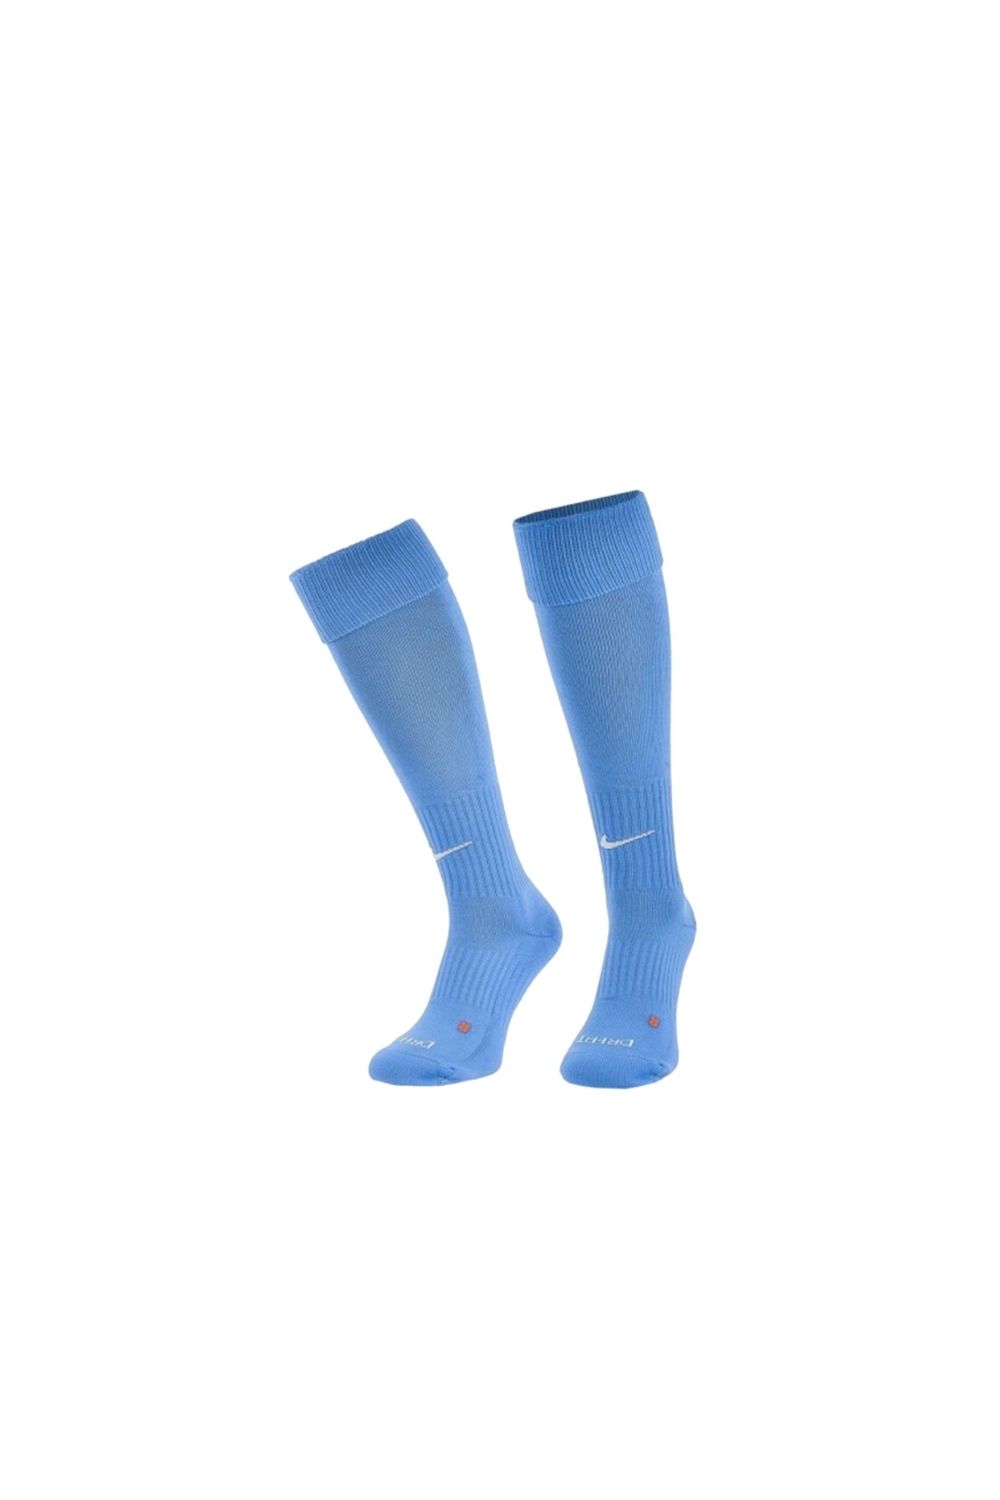 NIKE - Unisex κάλτσες NIKE CLASSIC II CUSH OTC -TEAM μπλε